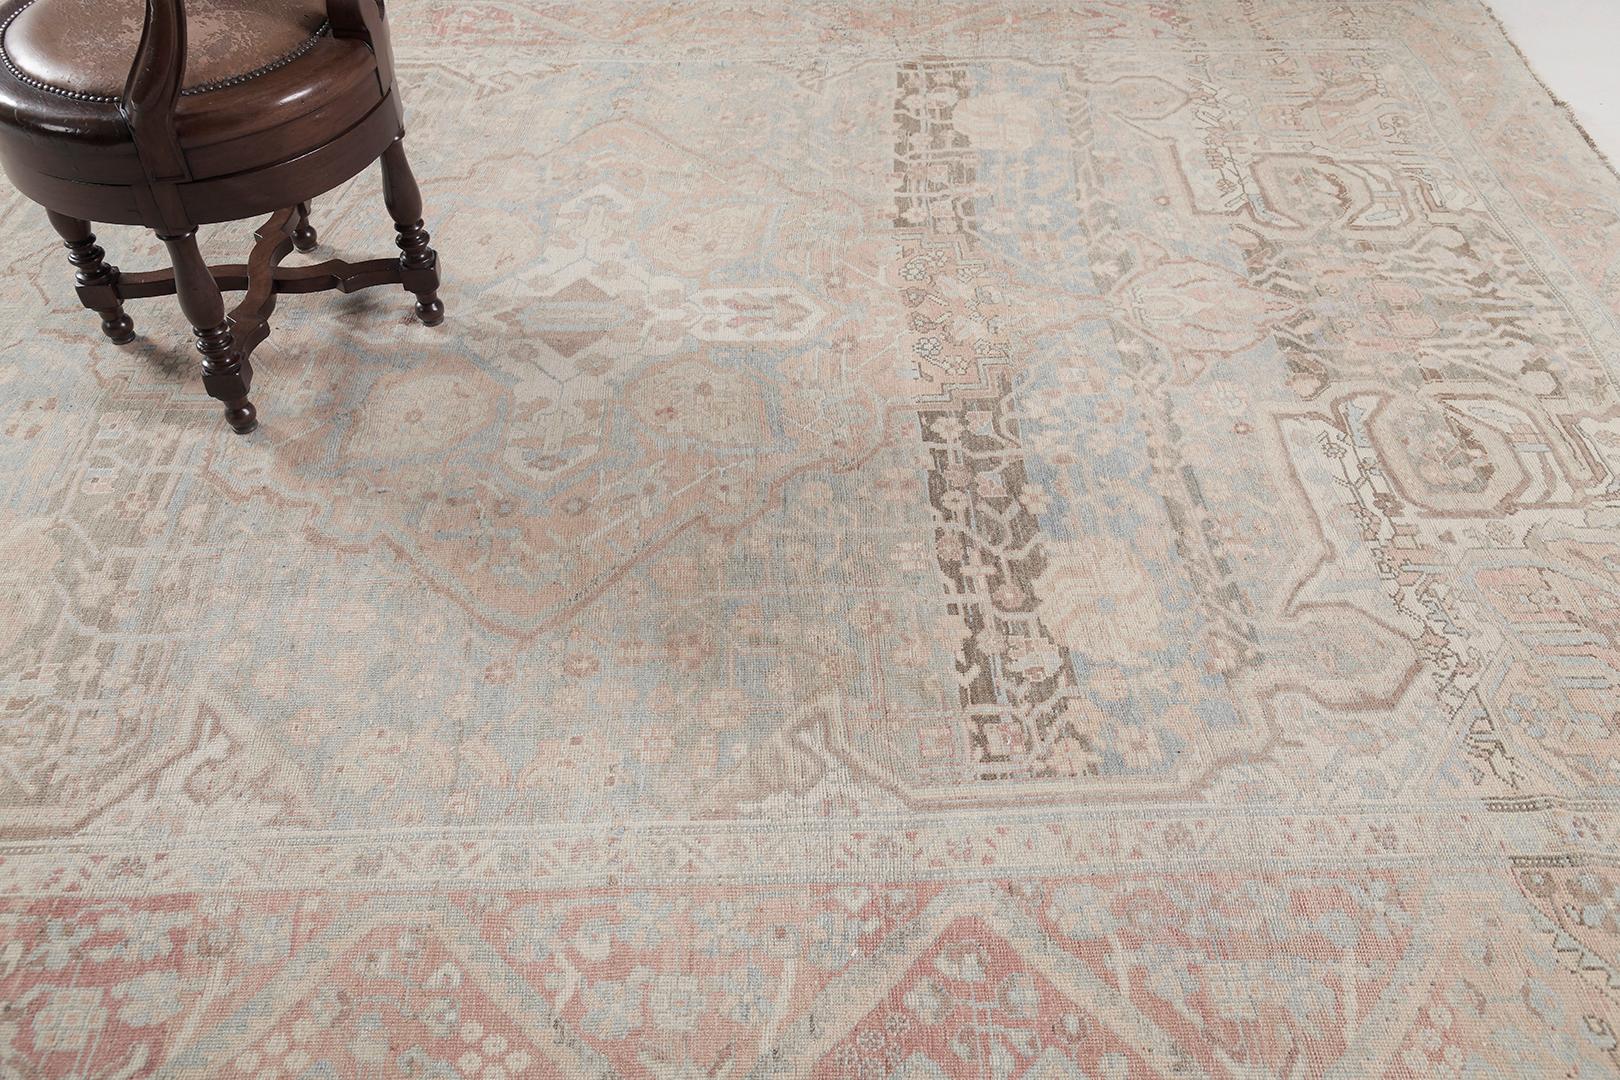 Ein prächtiger antiker persischer Bachtiar-Teppich mit grenzenlosen Formen, der für Ausgewogenheit sorgt, da sich jedes einzelne Element in einer harmonischen Ausführung und Komposition zusammenfügt. Dieser zeitlose Teppich in den majestätischen,